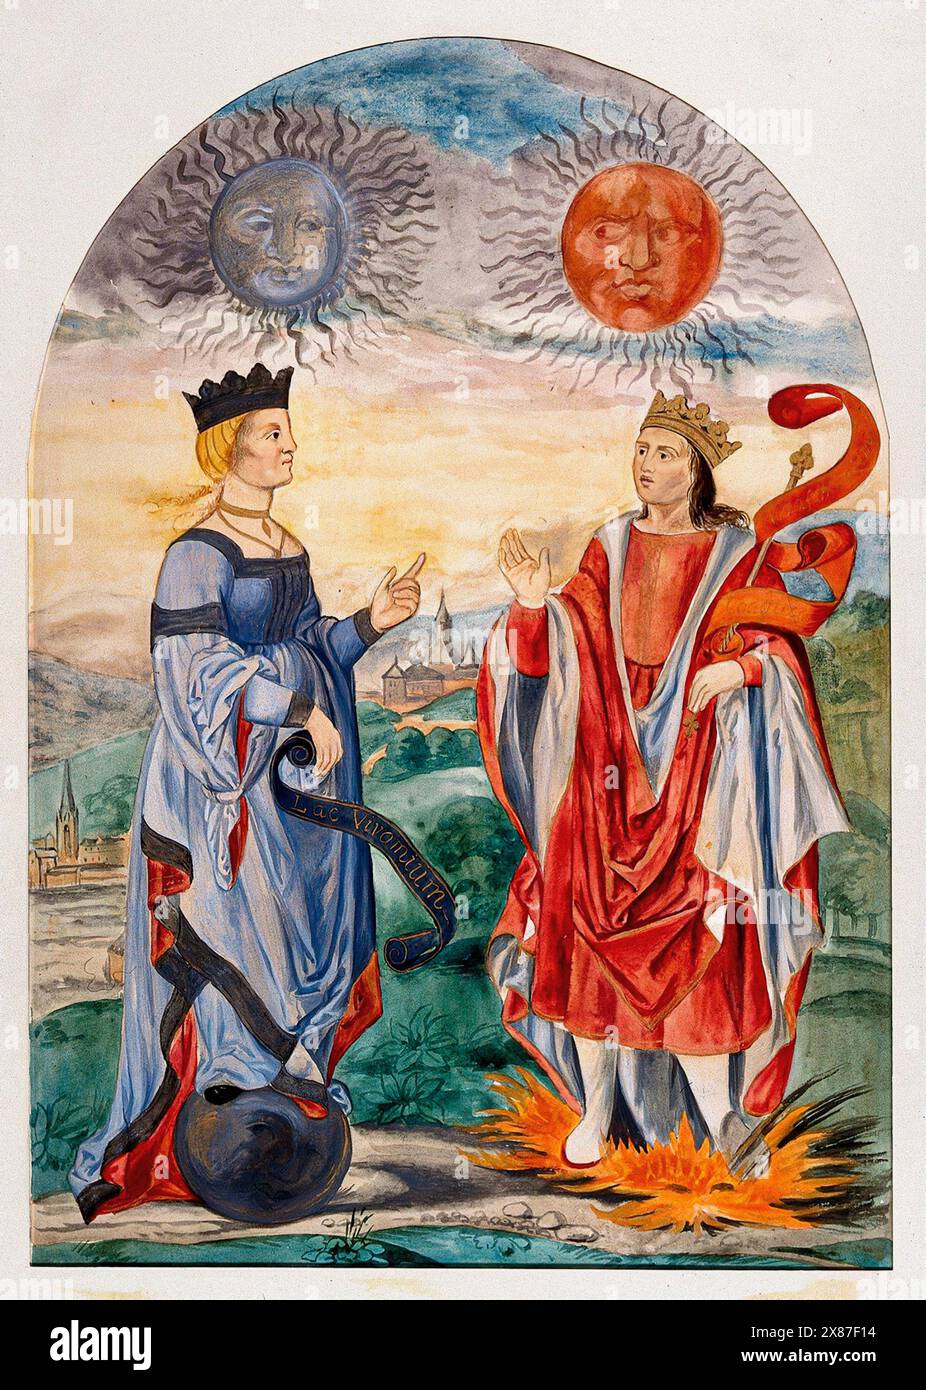 Ein Mond über einer in Blau gekleideten Königin und eine Sonne über einem in Rot gekleideten König; sie repräsentieren zwei alchemistische Prinzipien: Das auflösende „lac virginis“ (Quecksilber) und das koagulierende männliche Prinzip (Schwefel). Aquarellmalerei von E.A. Ibbs. Stockfoto